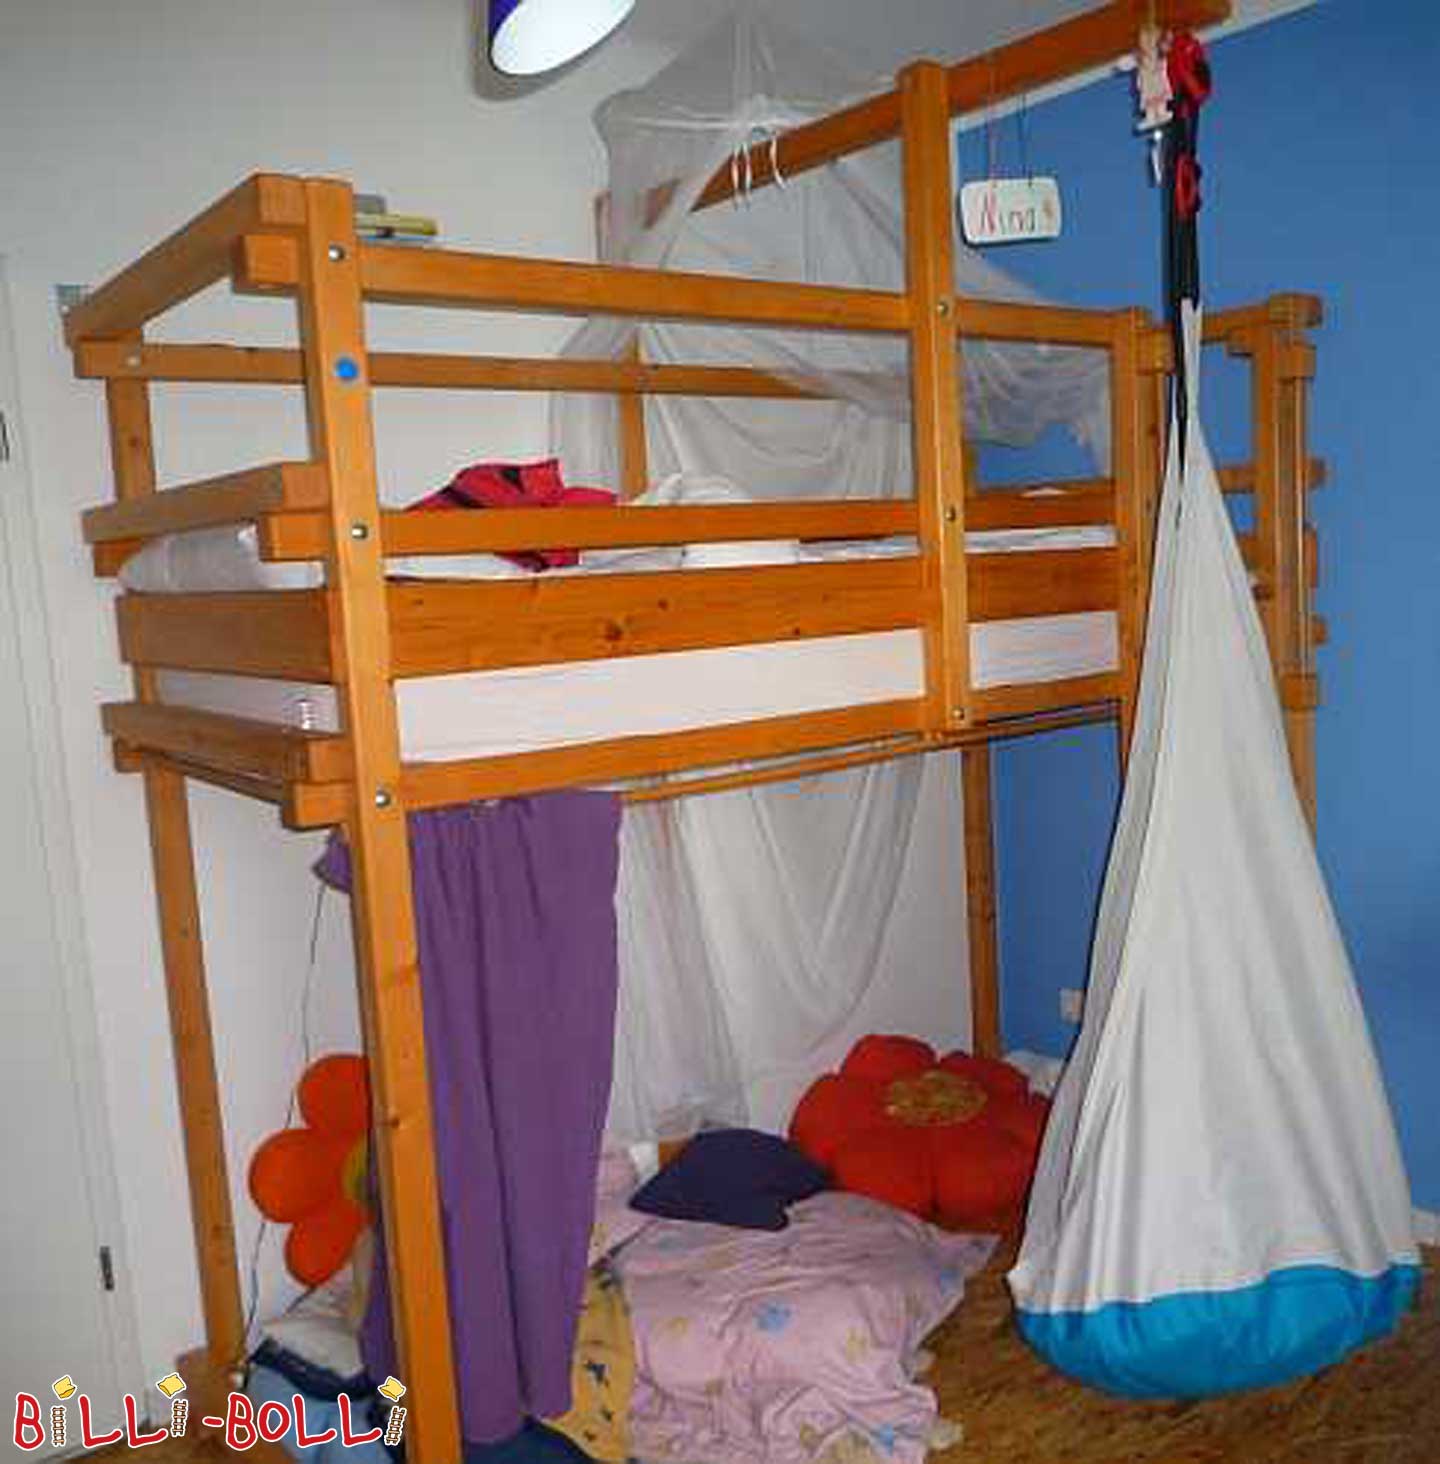 Escalera de cama tipo loft pirata afuera (Categoría: cama alta segunda mano)